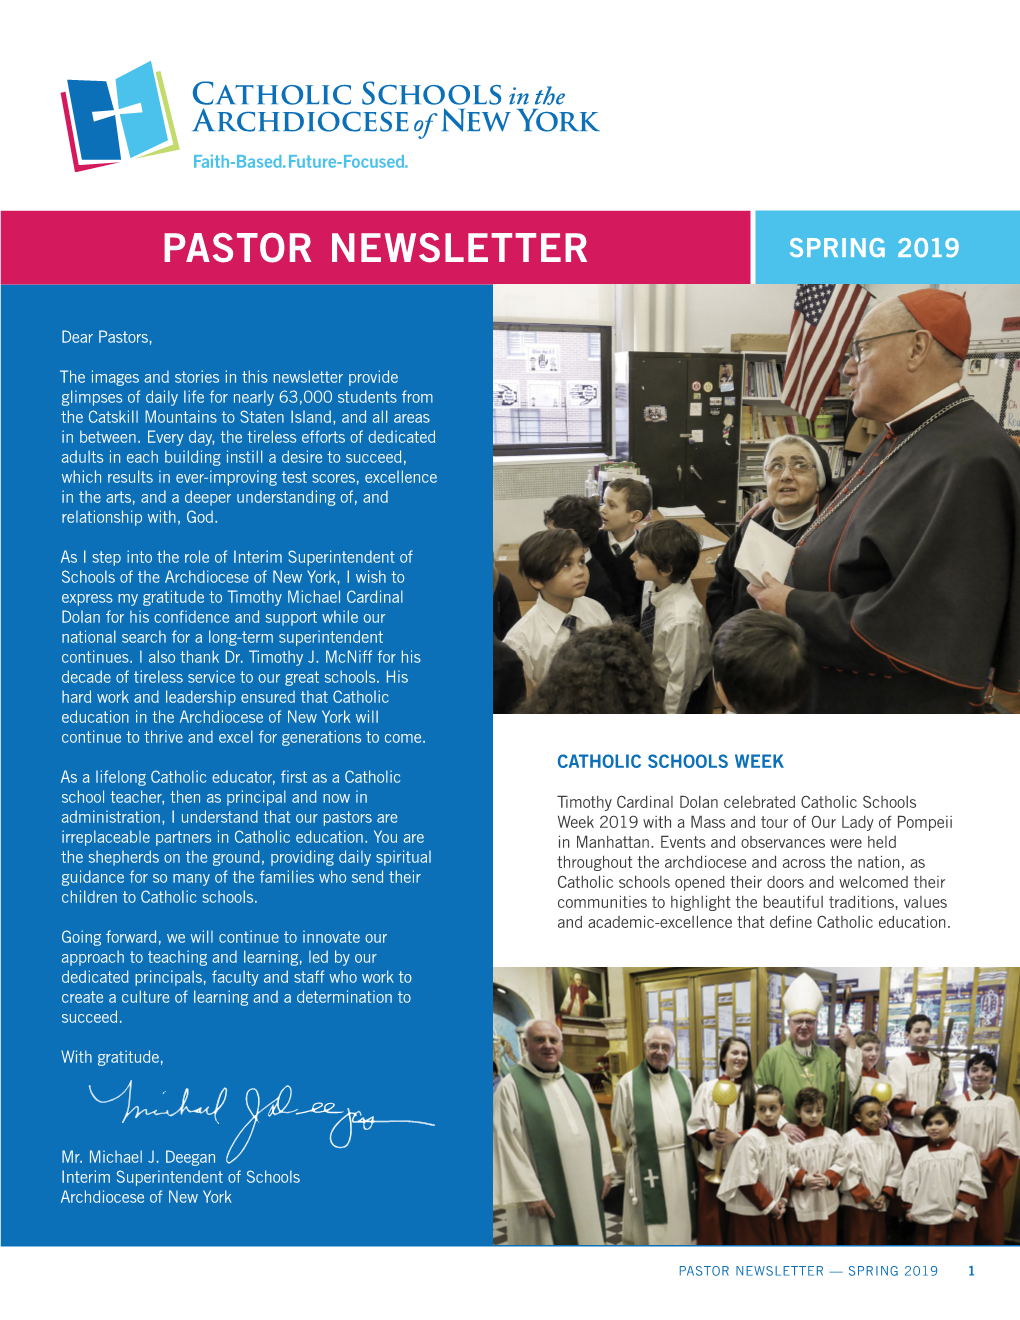 Pastor Newsletter Spring 2019